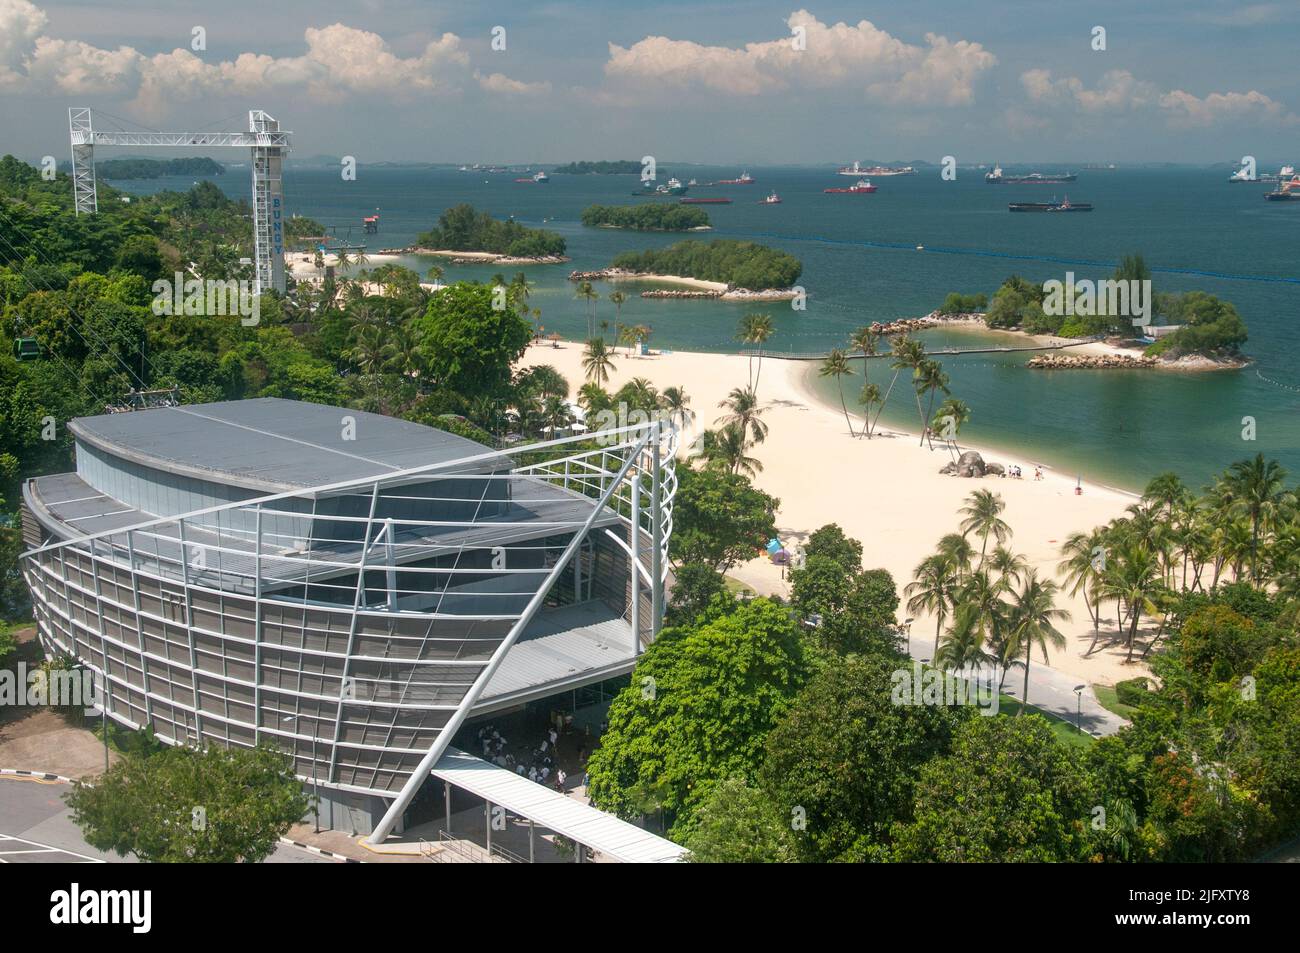 Las playas de la isla Sentosa desde arriba de la playa Siloso, Singapur, con un canal de navegación ocupado más allá Foto de stock